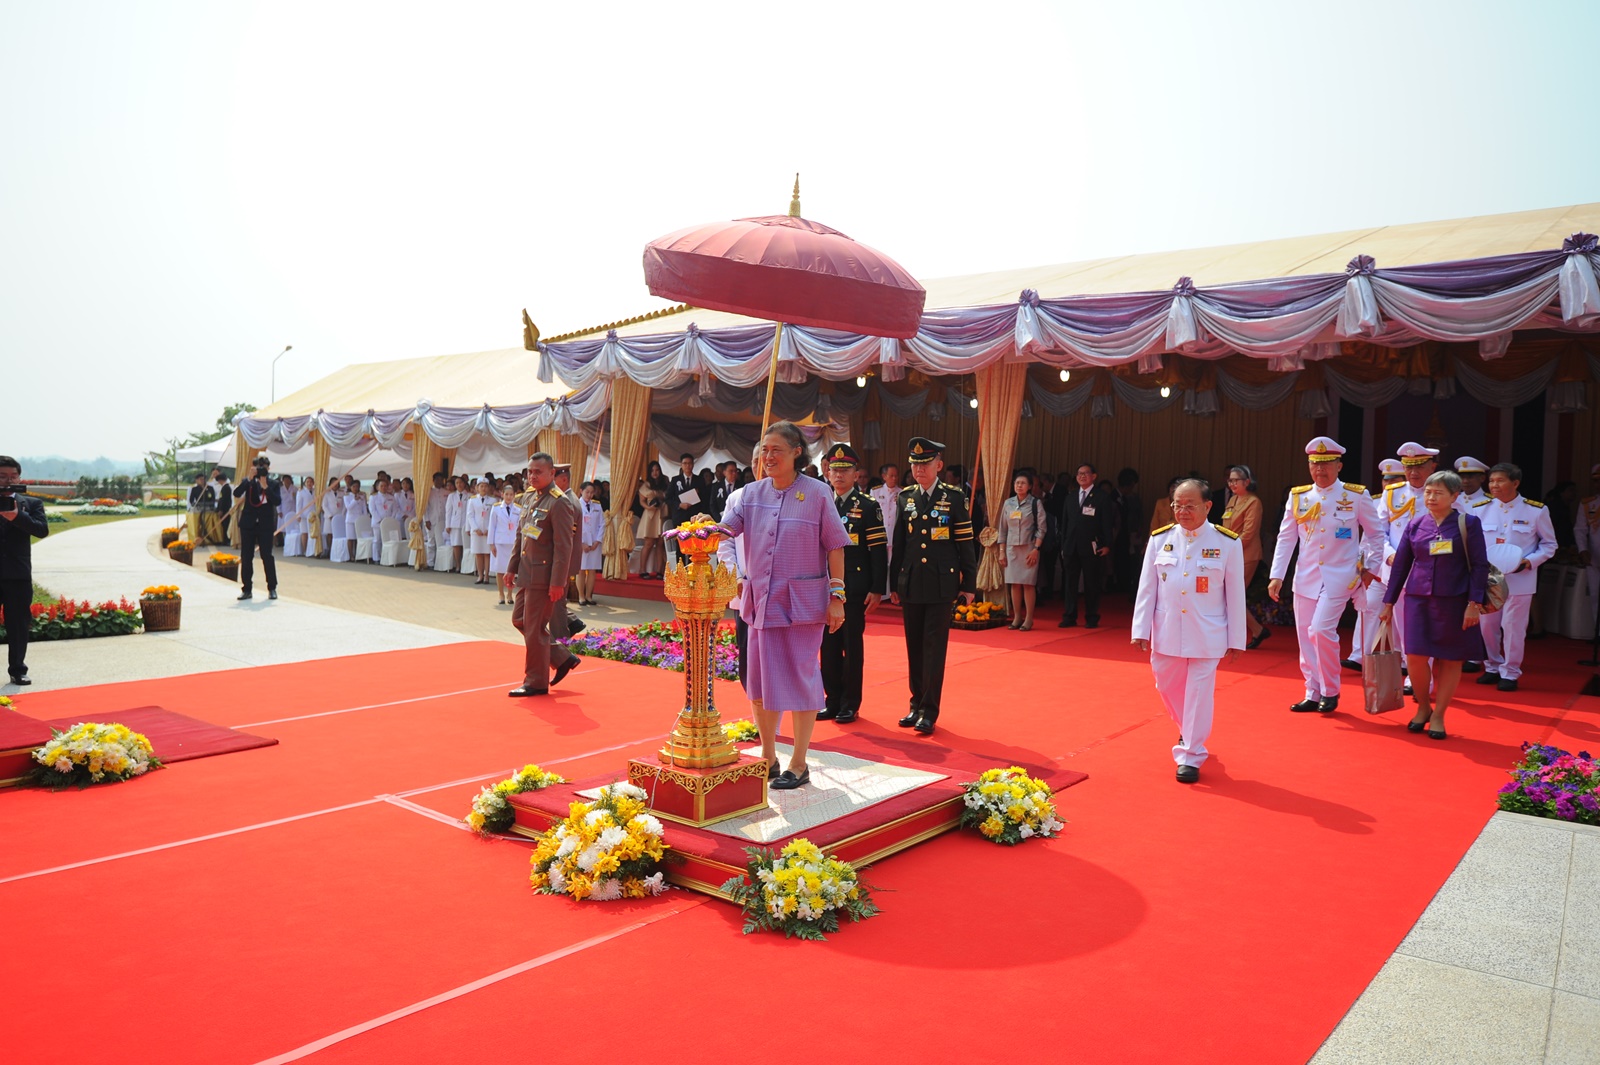 สมเด็จพระเทพรัตนราชสุดาฯ สยามบรมราชกุมารี ทรงเป็นองค์ประธานทำพิธีเปิดอย่างเป็นทางการ ‘โรงพยาบาลศูนย์การแพทย์มหาวิทยาลัยแม่ฟ้าหลวง’ 